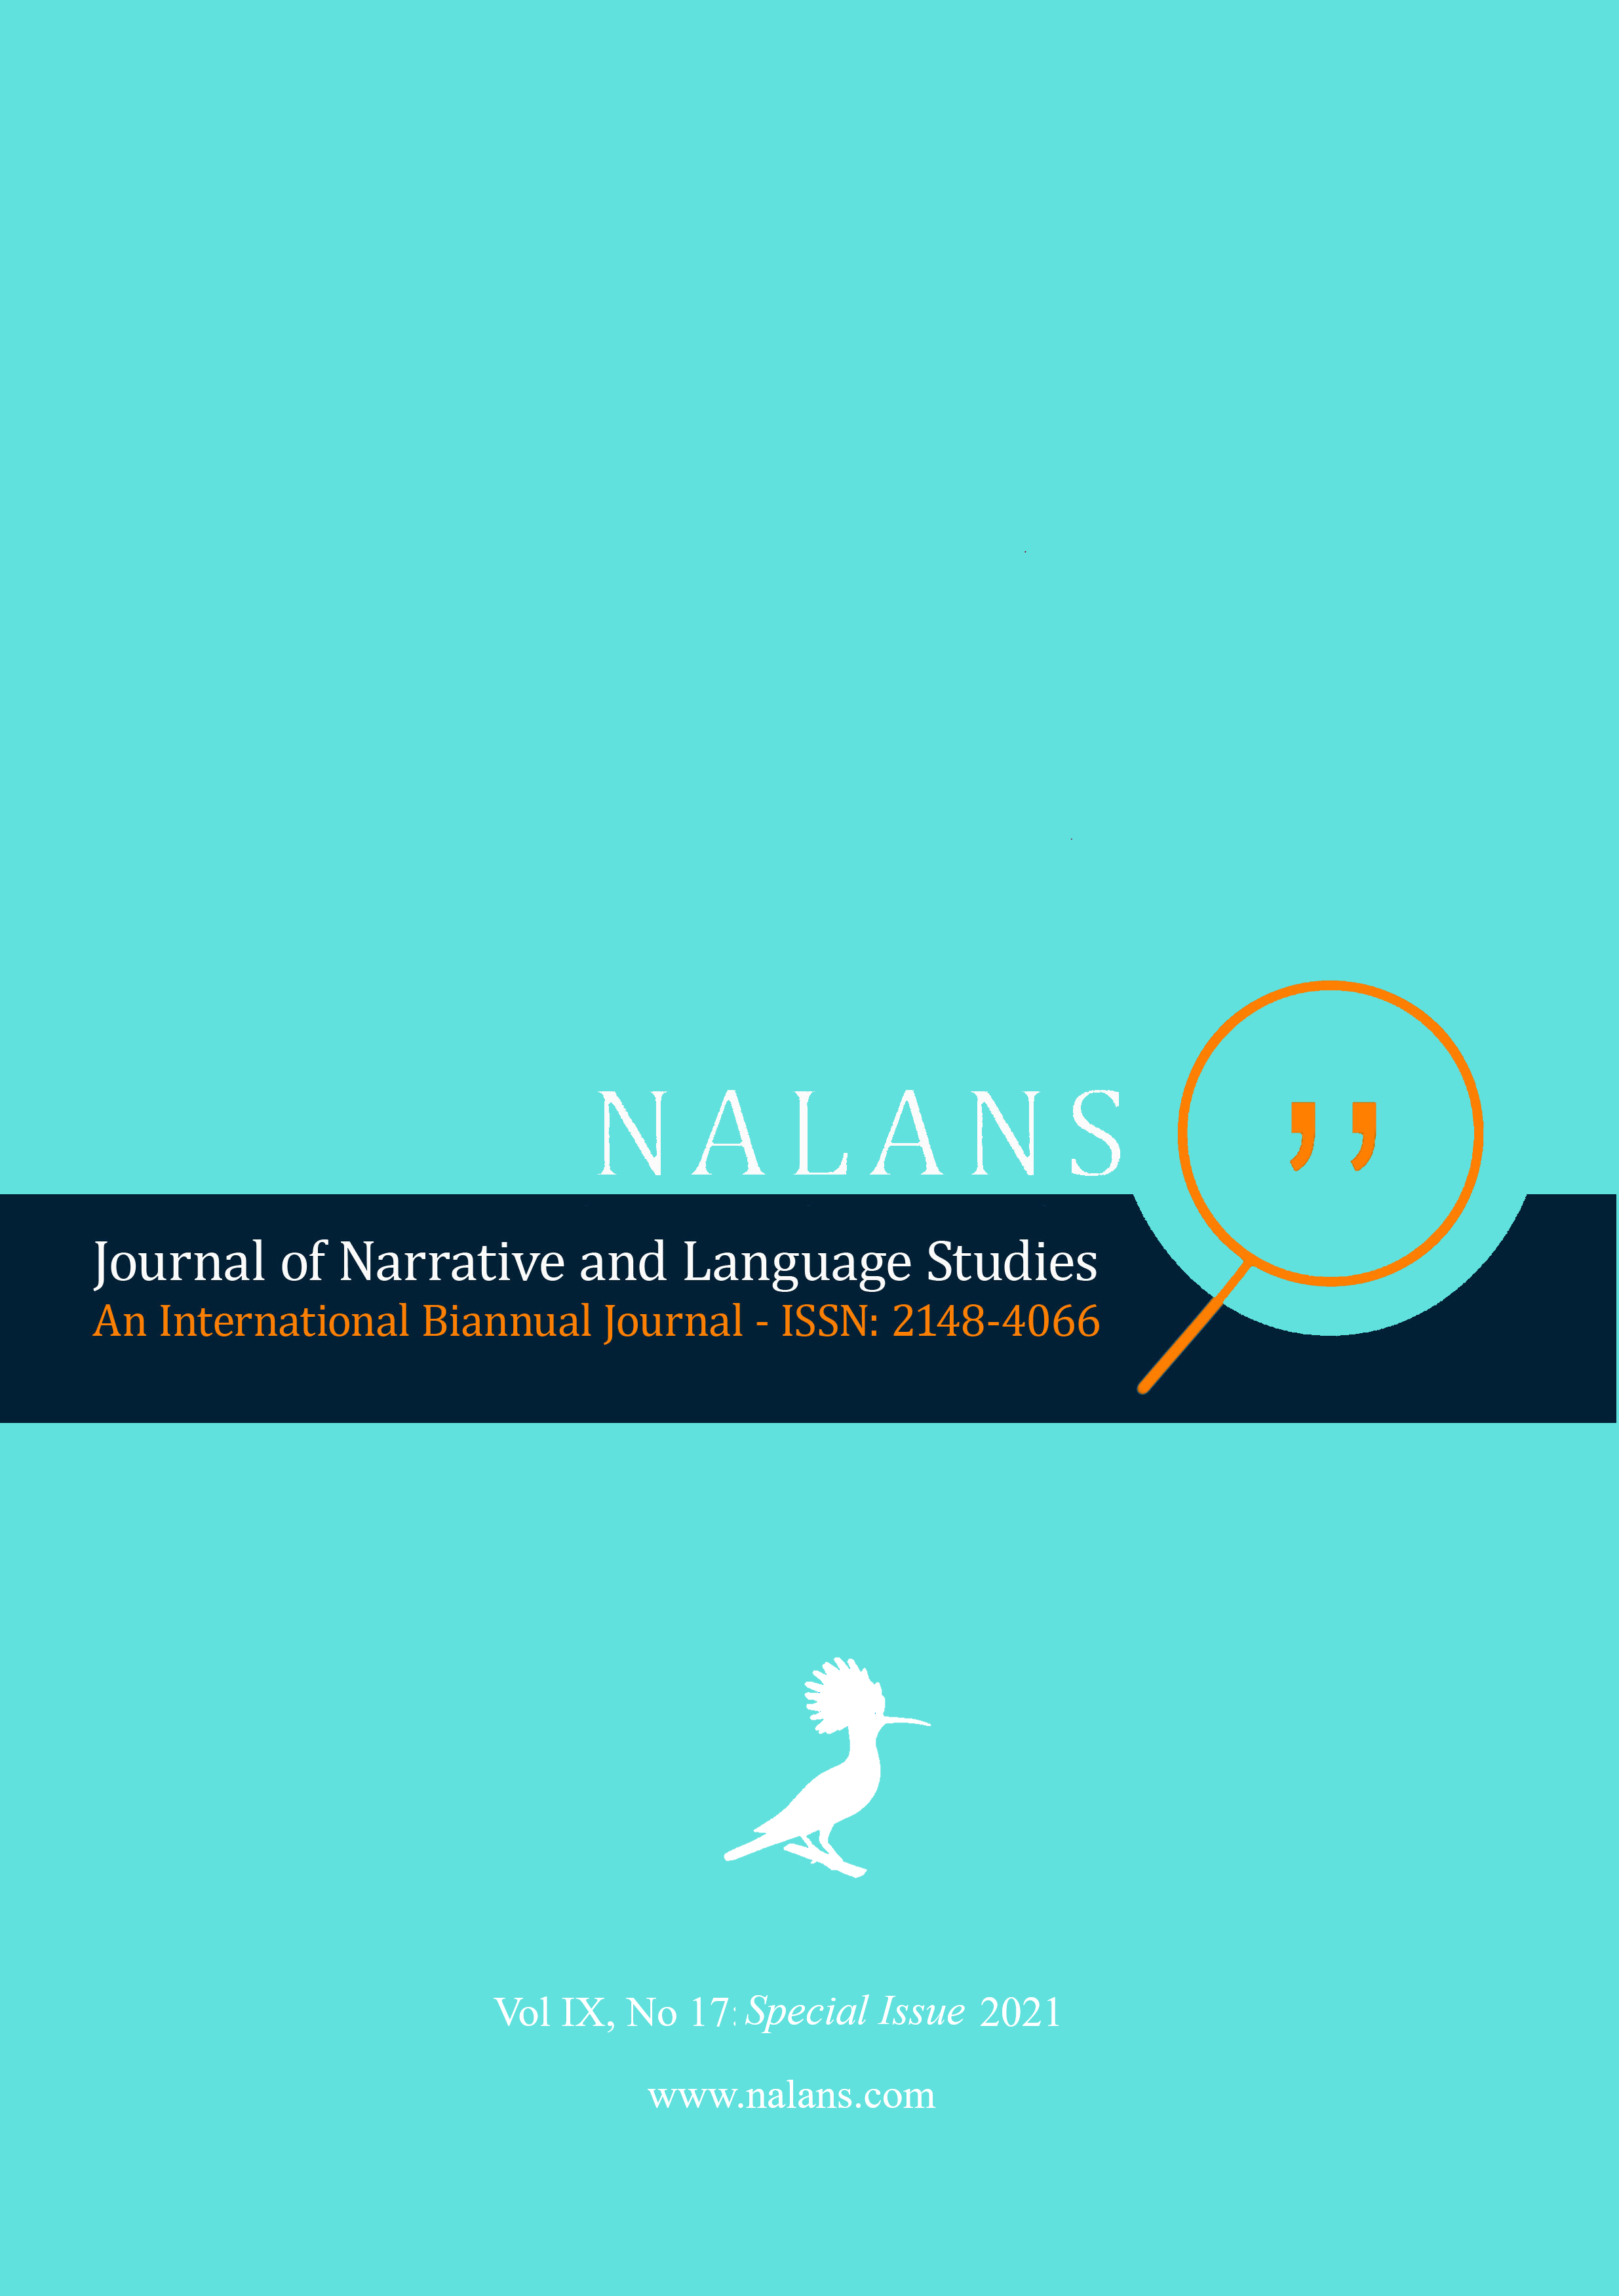 					View Vol. 9 No. 17 (2021): NALANS SPECIAL ISSUE VOL IX NO 17
				